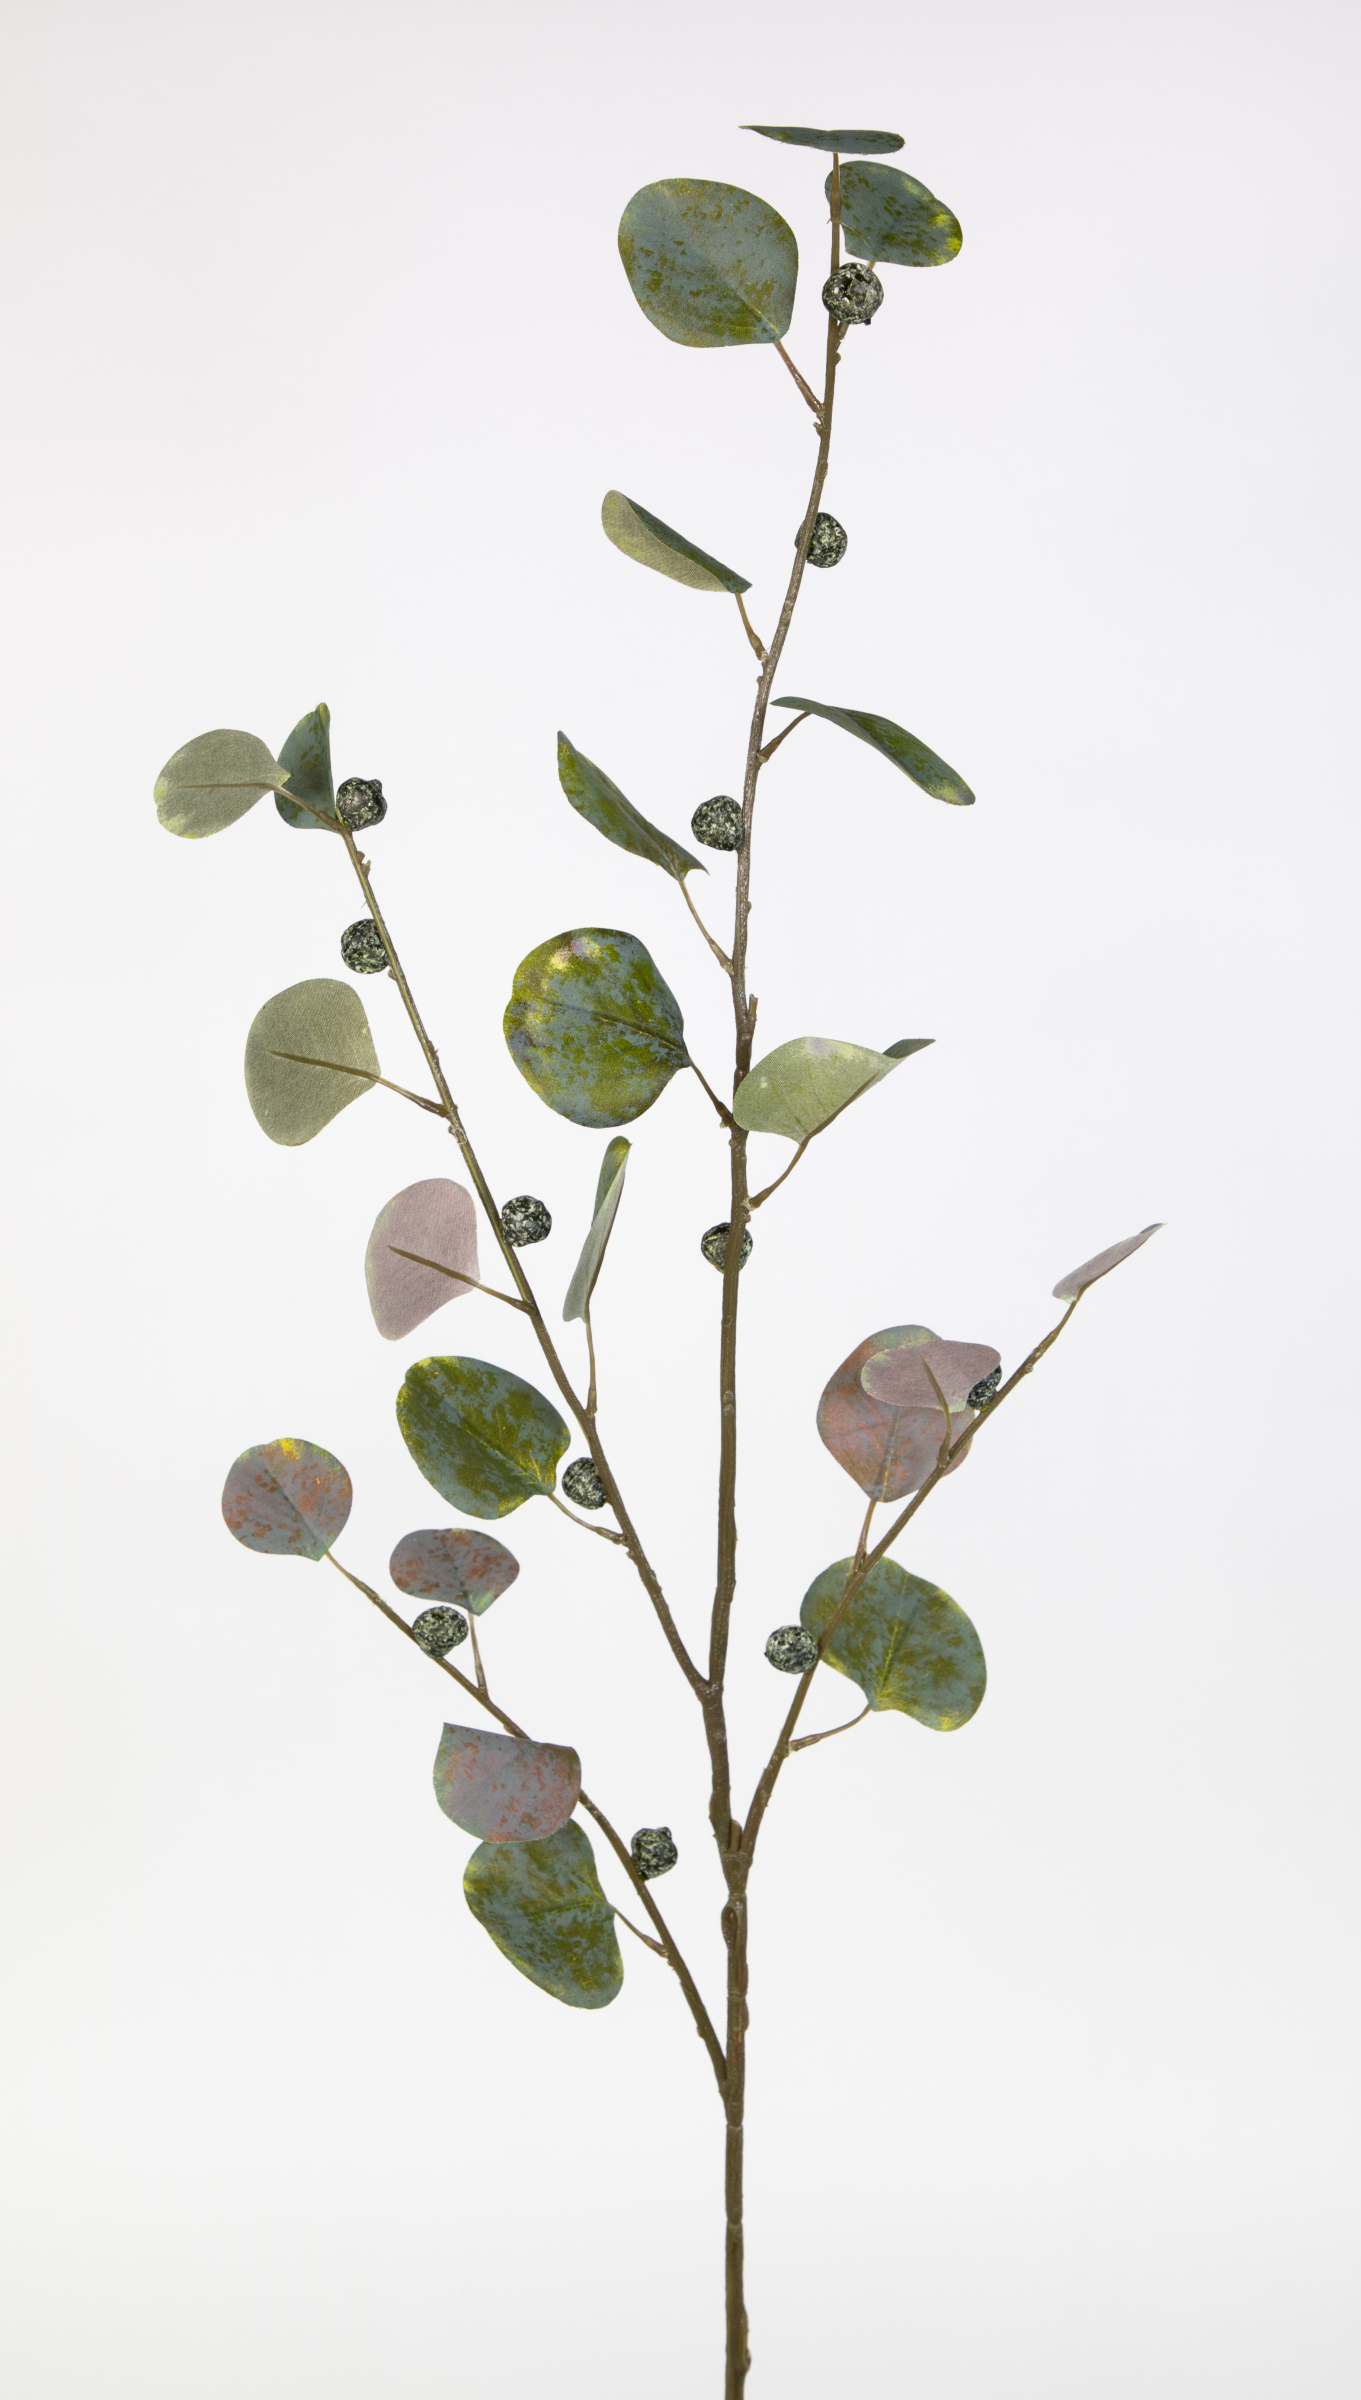 Eukalyptuszweig mit Früchten 110cm grün JA Kunstzweig künstliche Zweige  künstlicher Eukalyptus